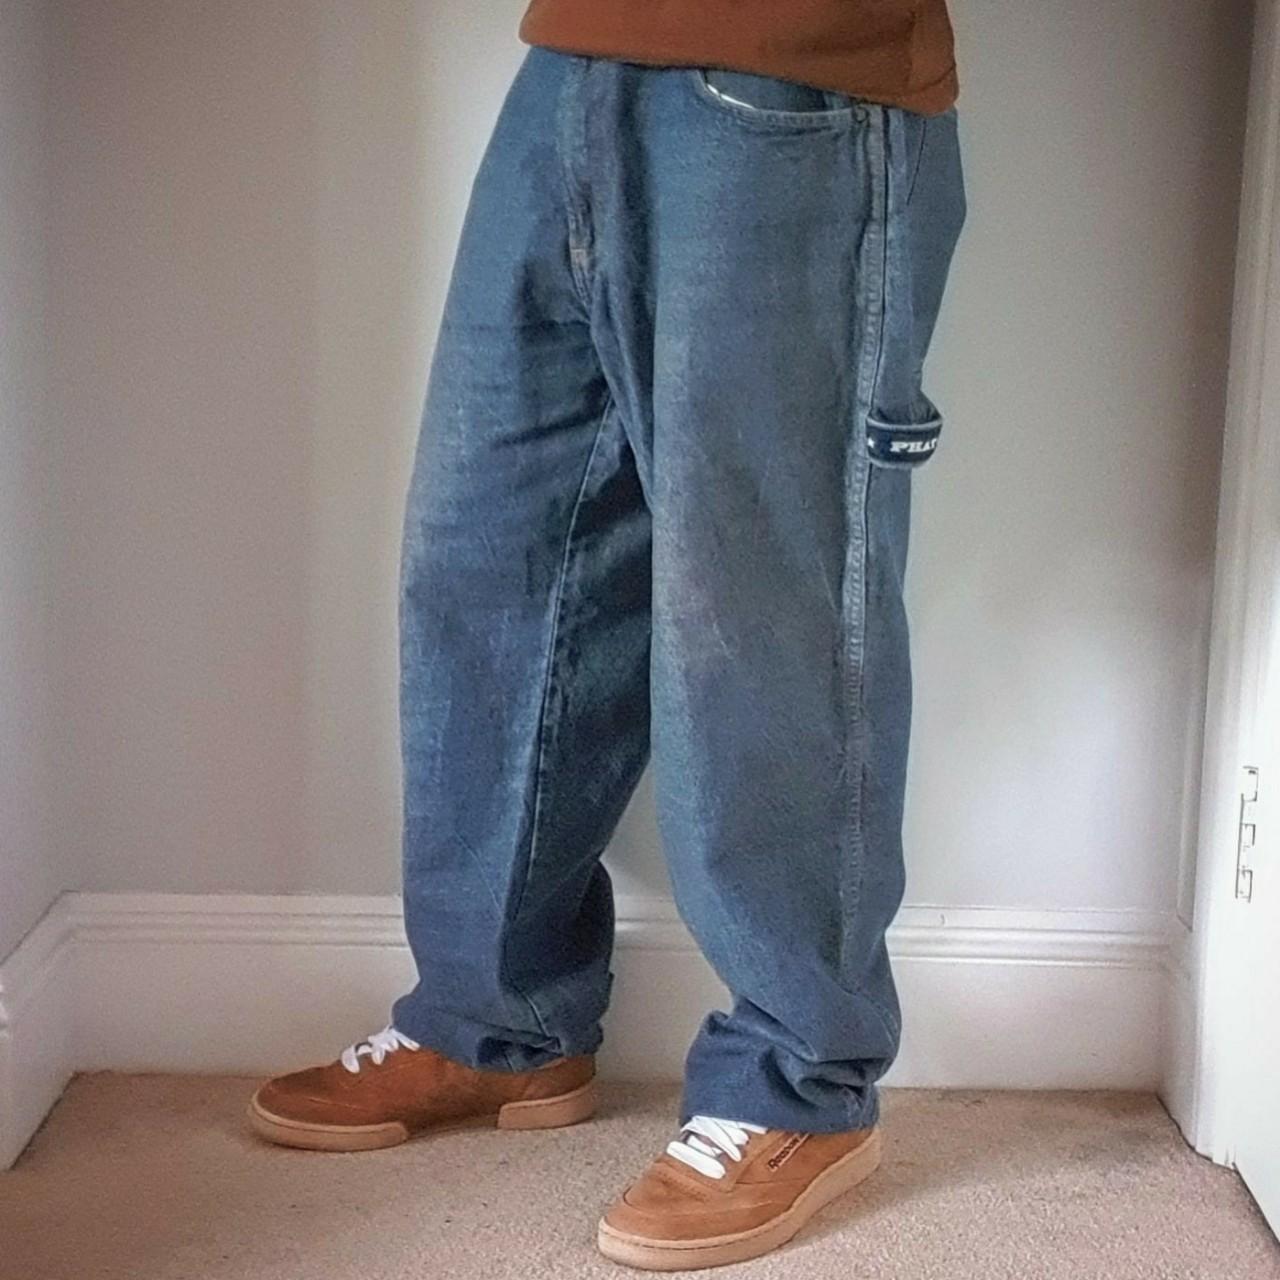 90s Phat Farm Baggy Painter Jeans. Size 36